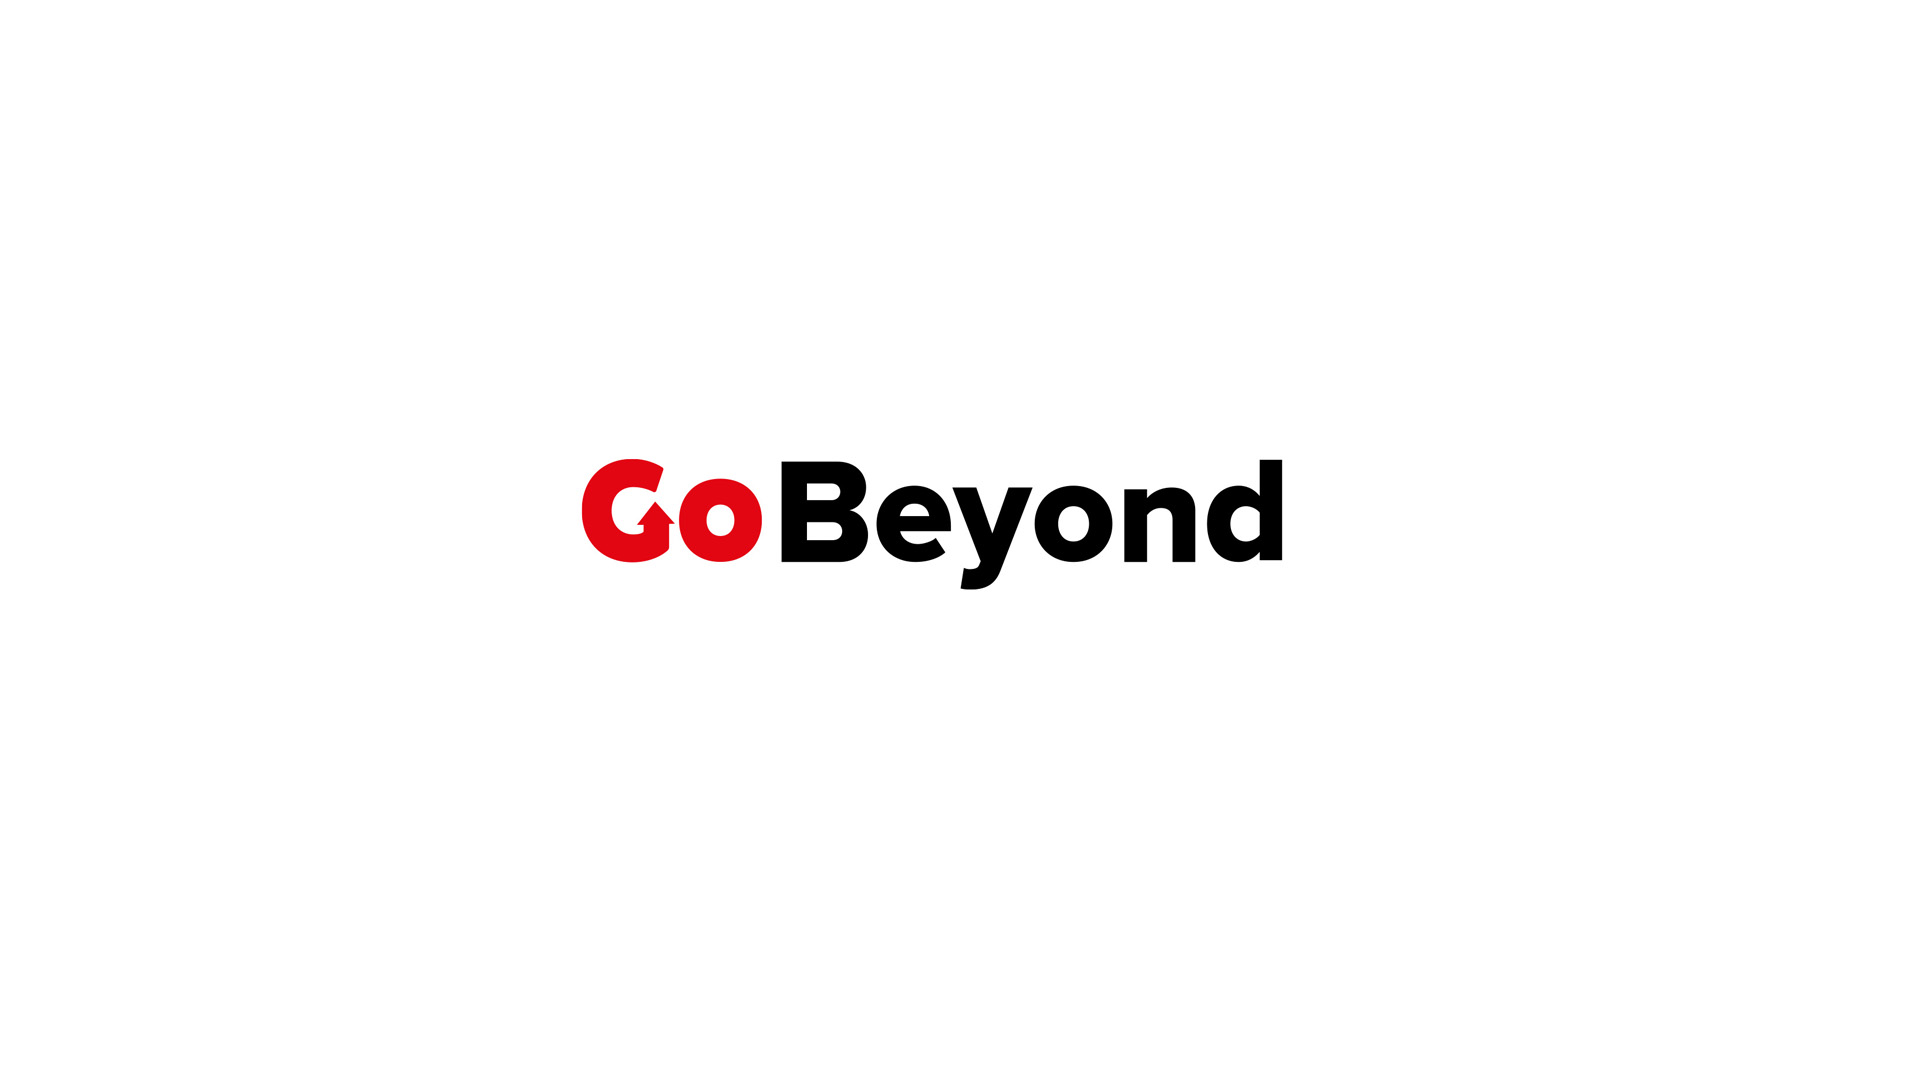 Go Beyond, una gran manera para reconocer, celebrar y alcanzar metas comunes